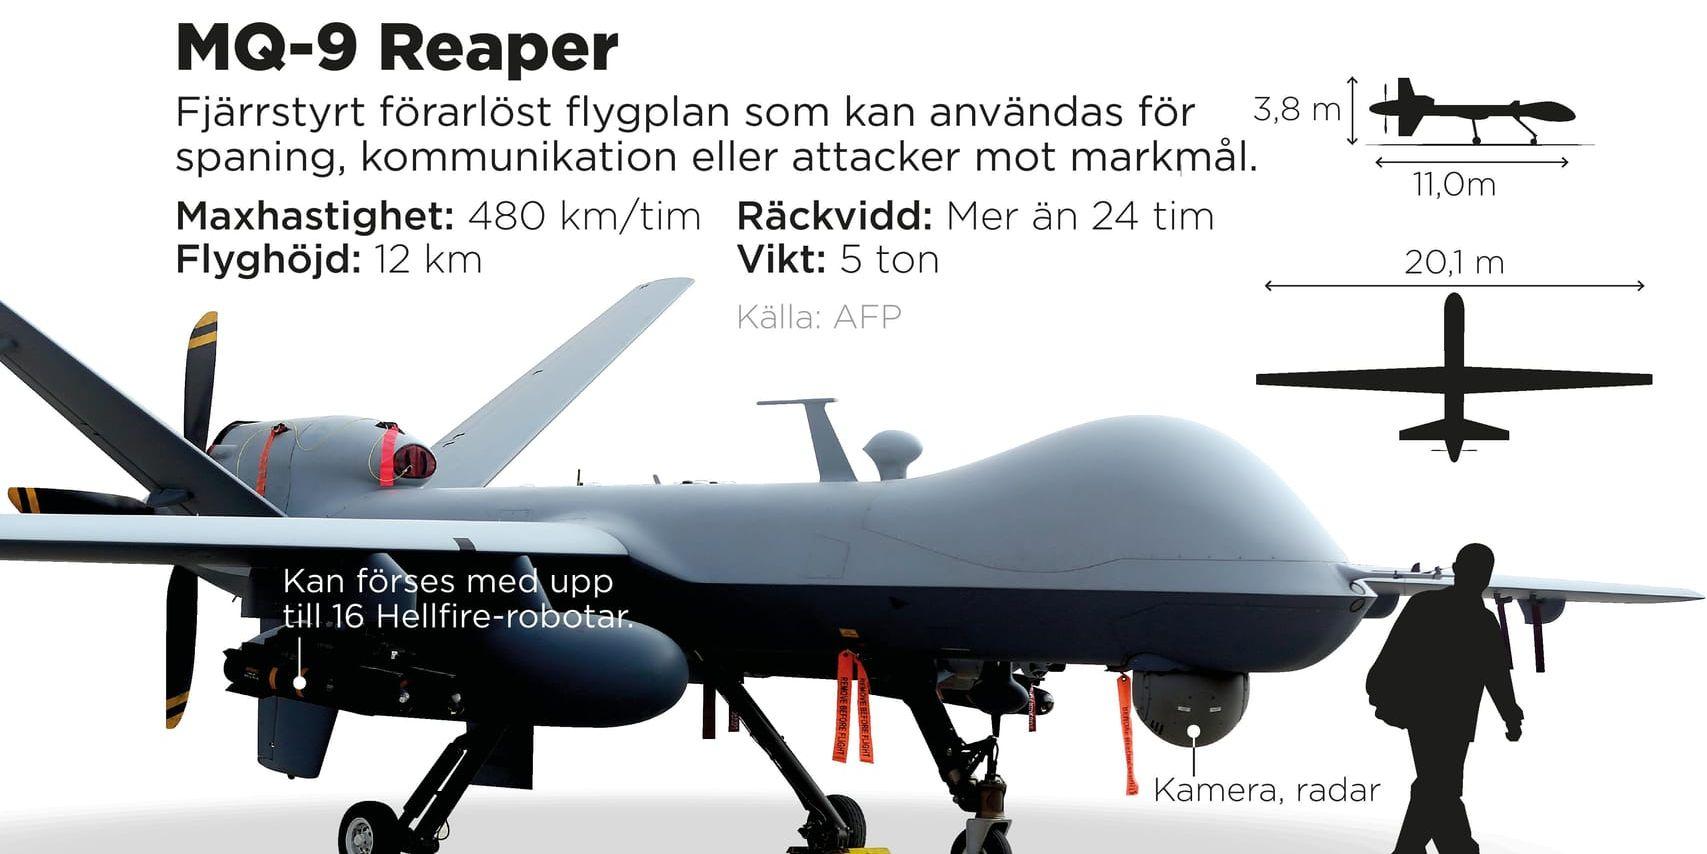 MQ-9 Reaper är ett fjärrstyrt förarlöst flygplan som kan användas för spaning, kommunikation eller attacker mot markmål.